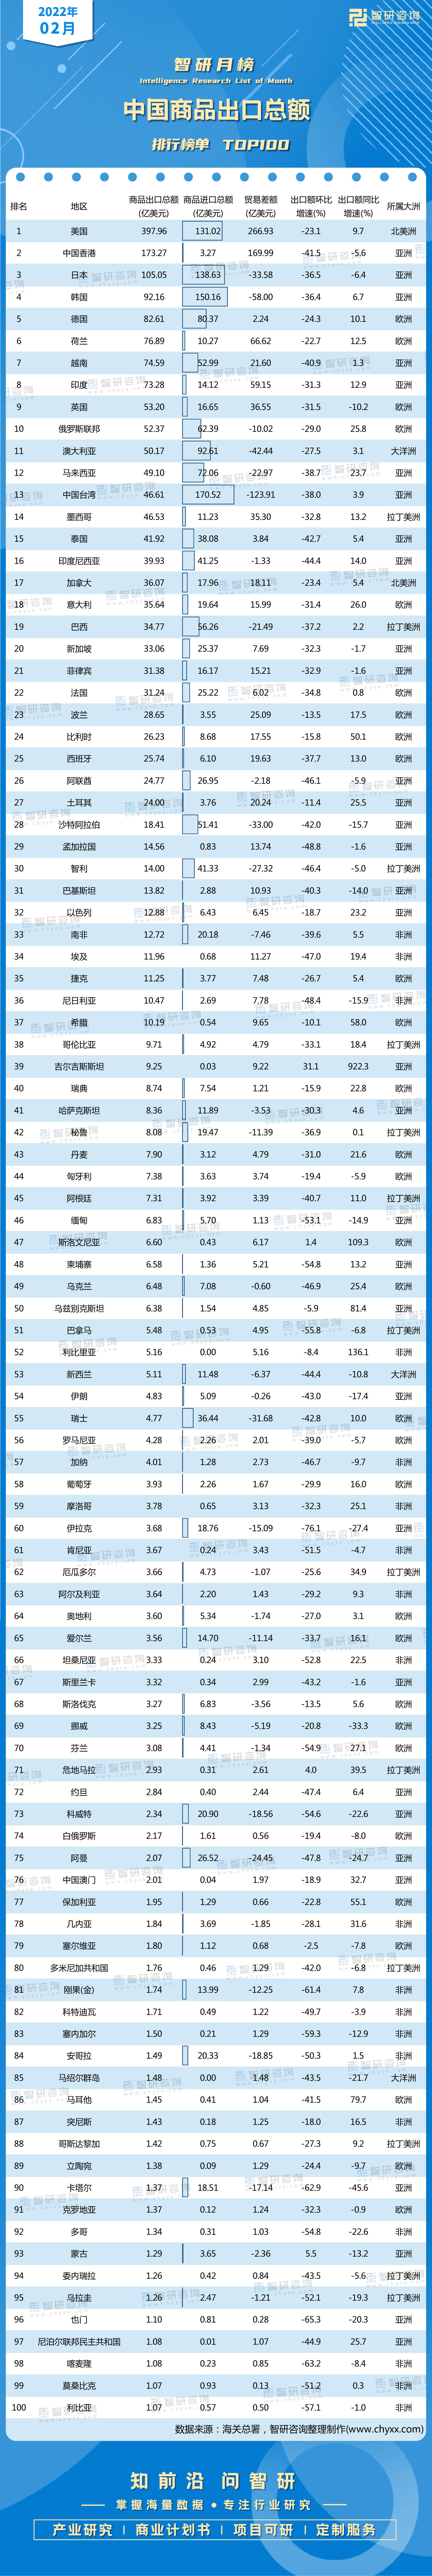 中國對外出口商品排行_外貿總額排名:中國第1、美國第2、德國第3、荷蘭第4、日本第5